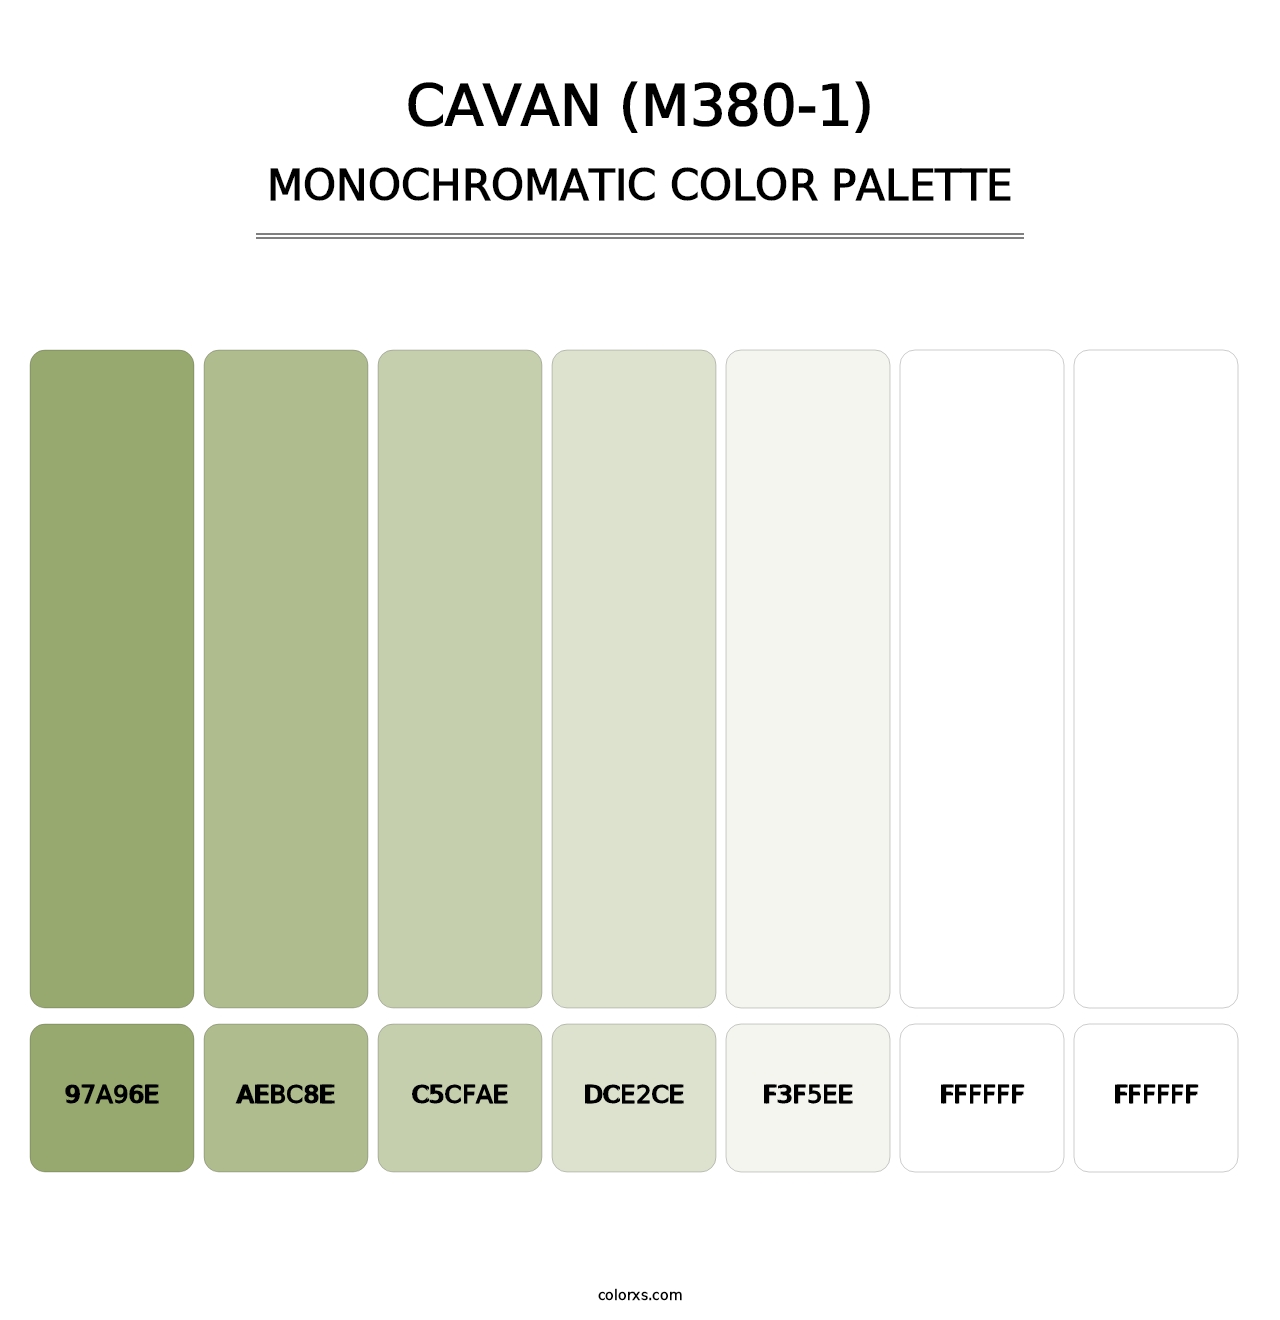 Cavan (M380-1) - Monochromatic Color Palette